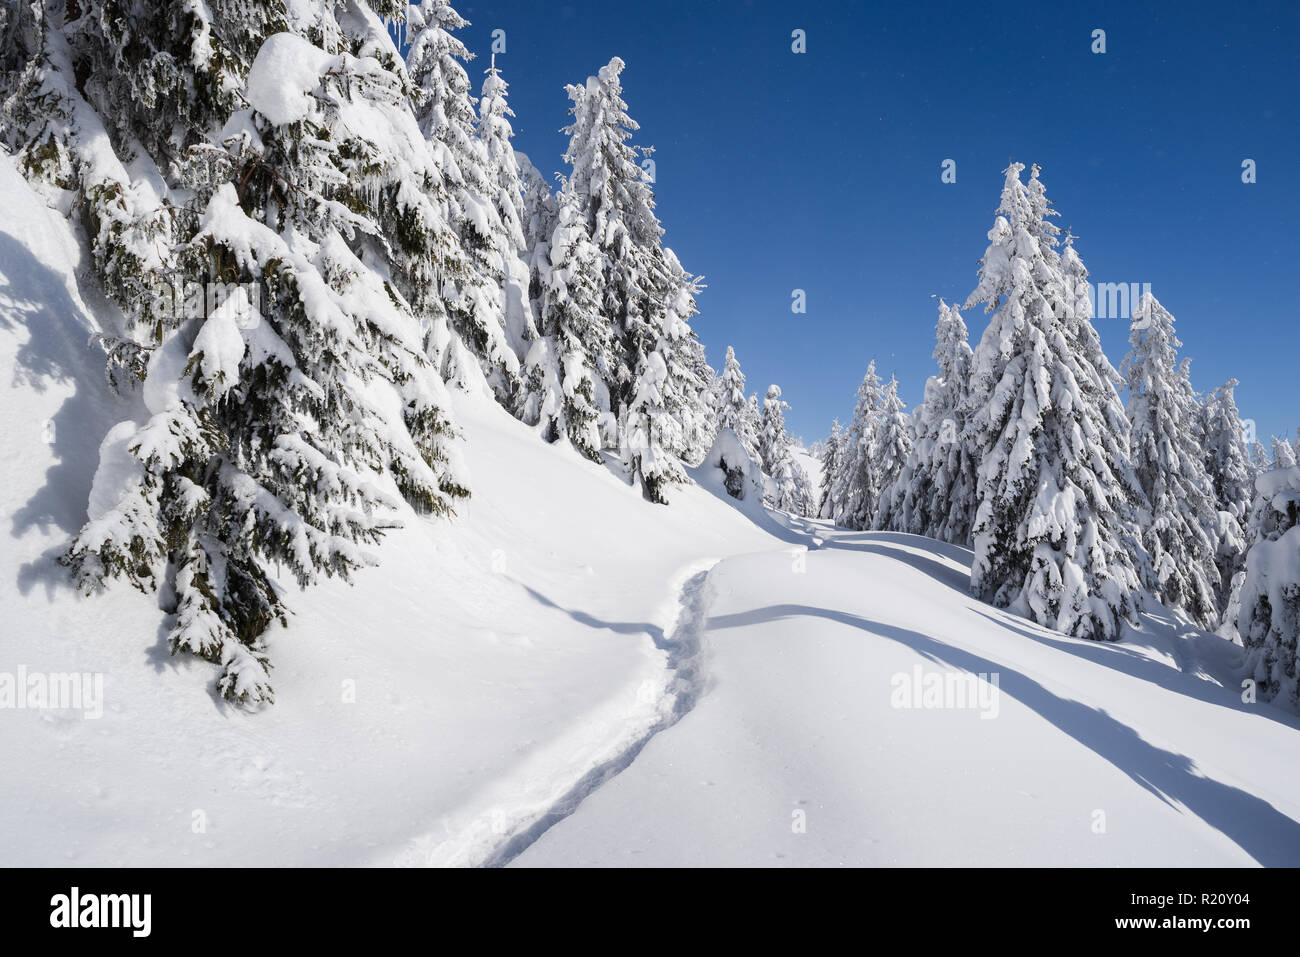 L'hiver glacial sur une journée ensoleillée. Paysage de neige avec des forêts de sapin dans les montagnes. Chemin dans la neige Banque D'Images